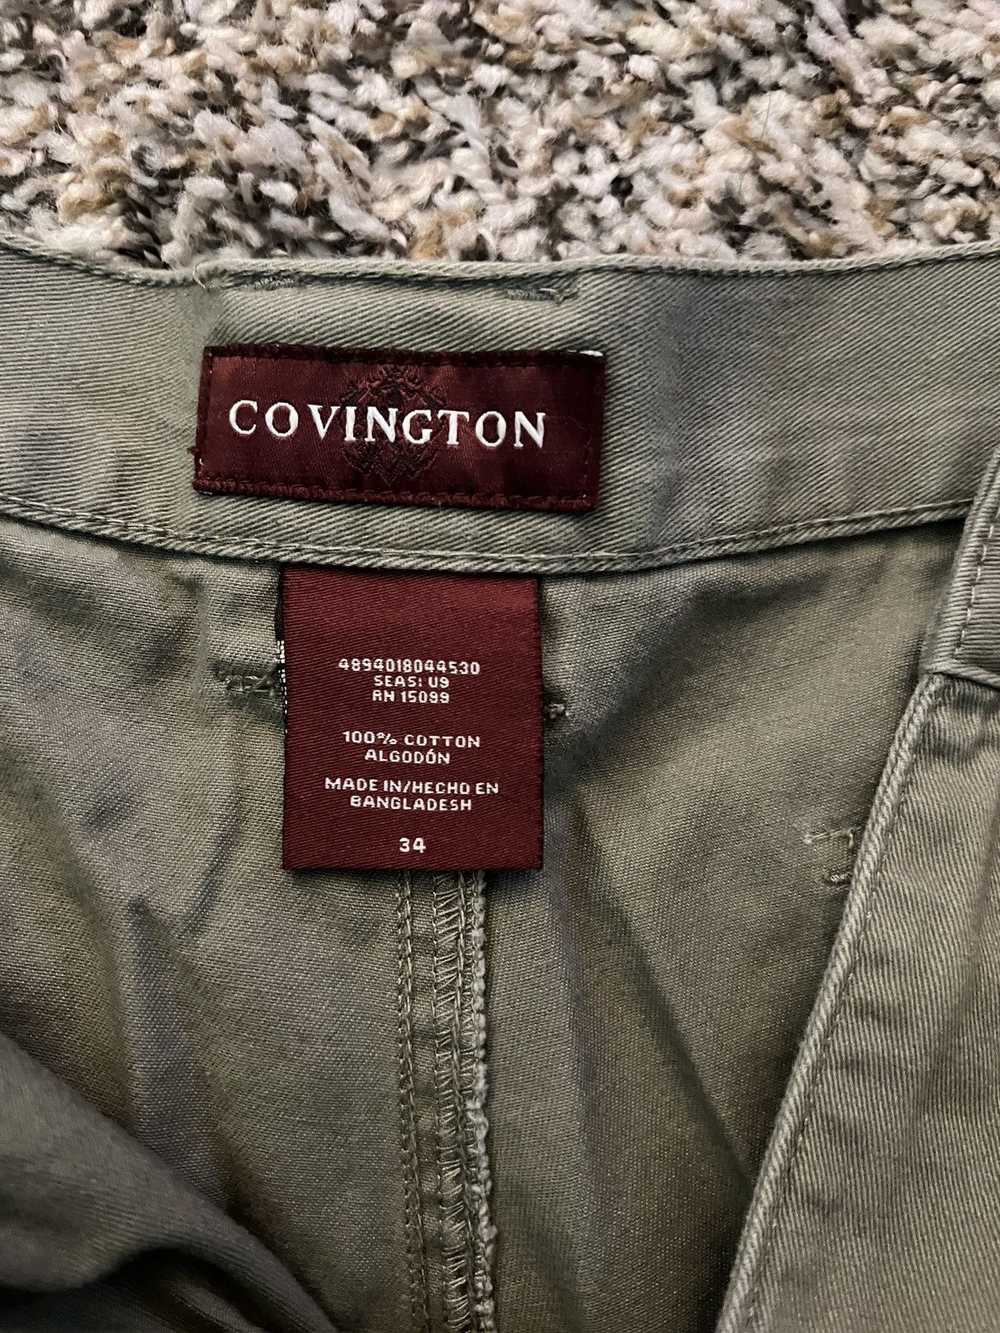 Covington Covington hiking shorts - image 3